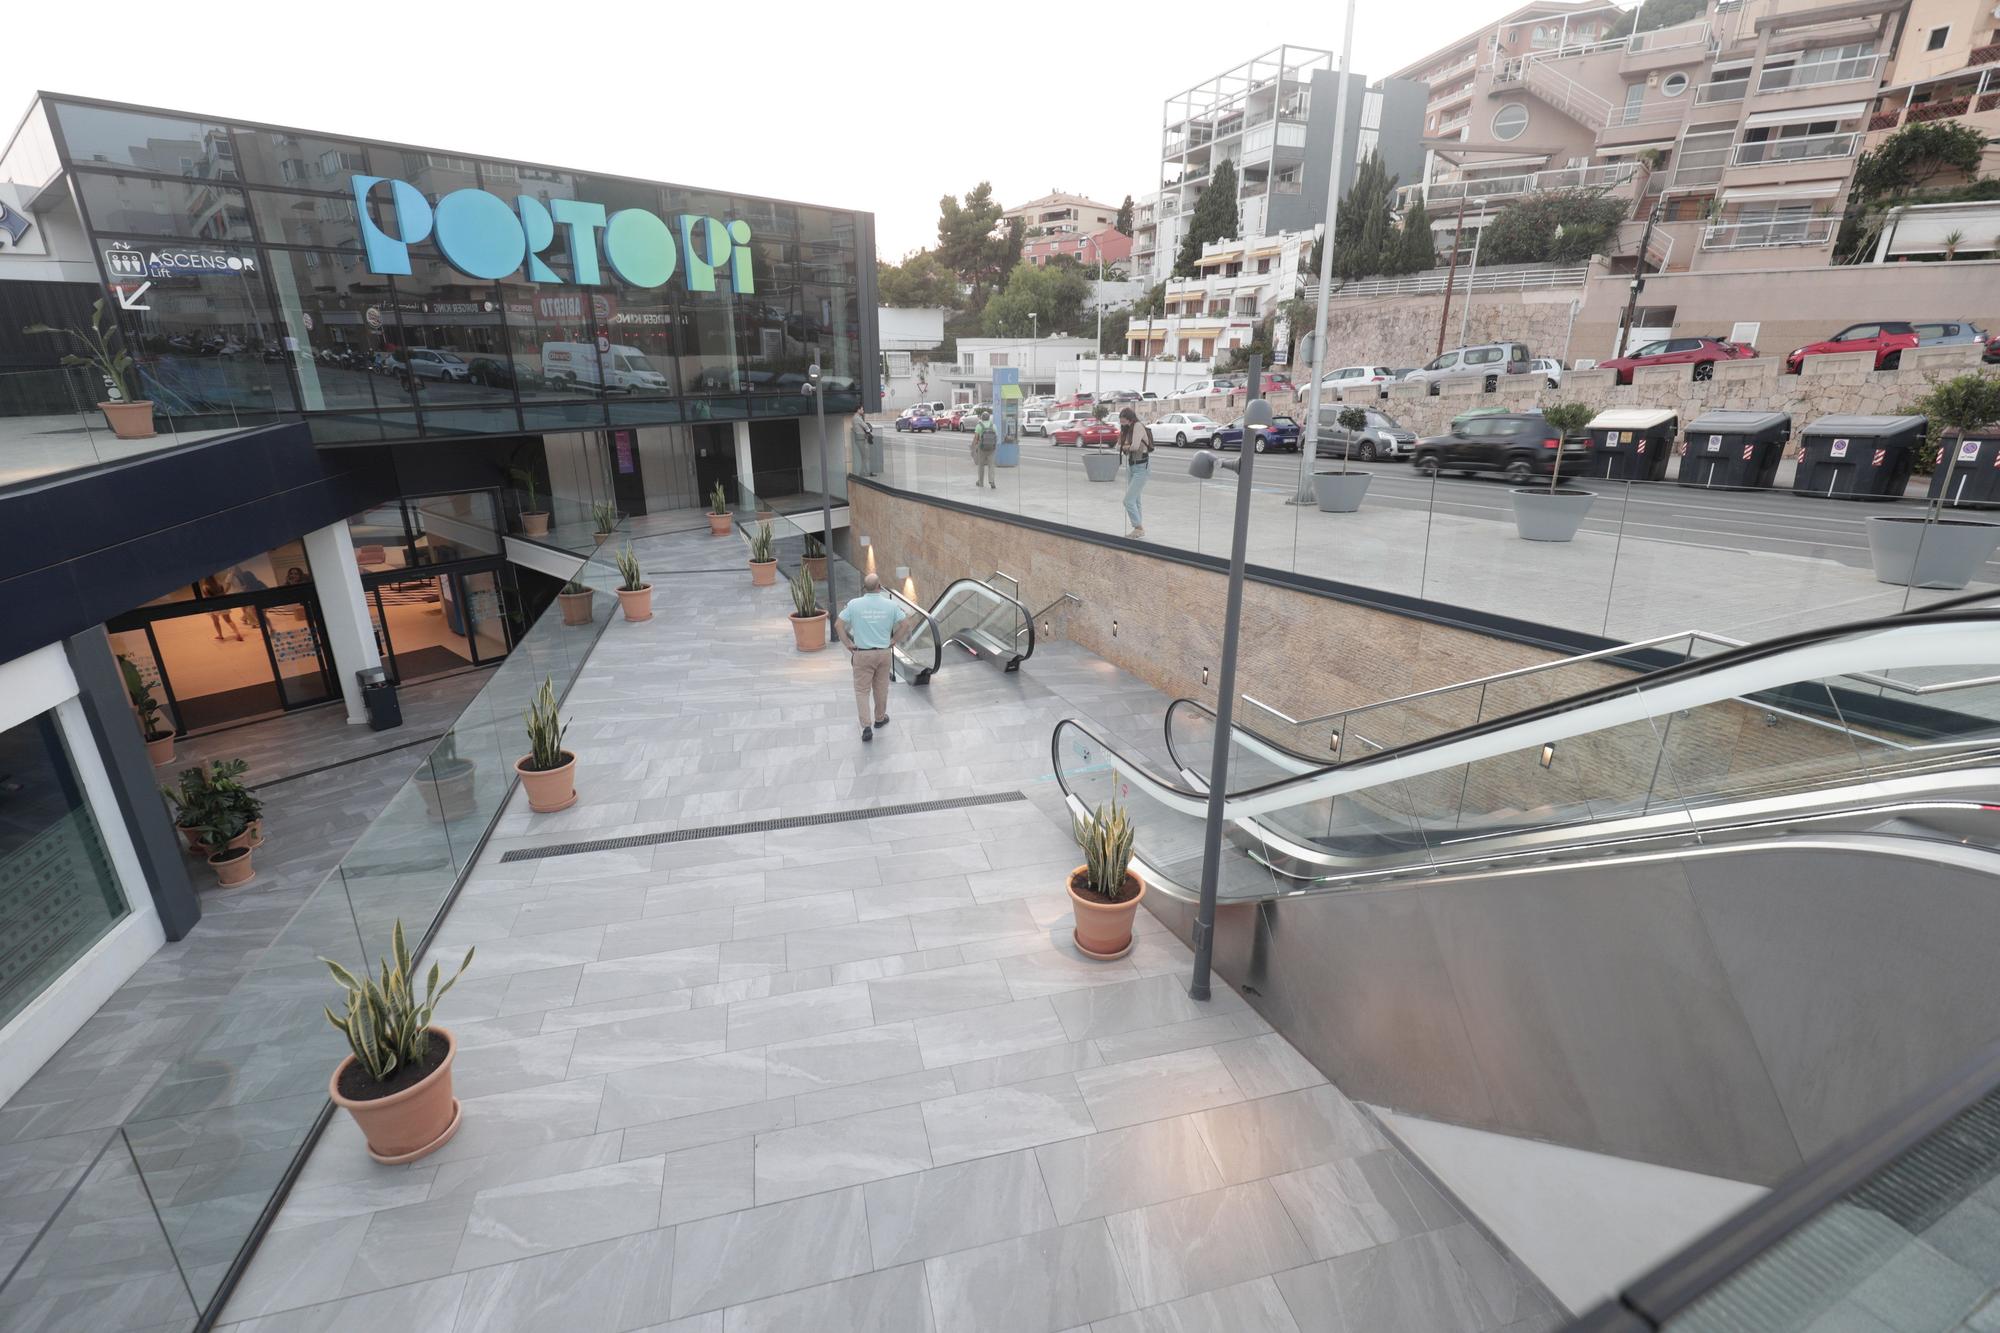 Porto Pi se presenta tras una reforma total que asciende a 30 millones de euros